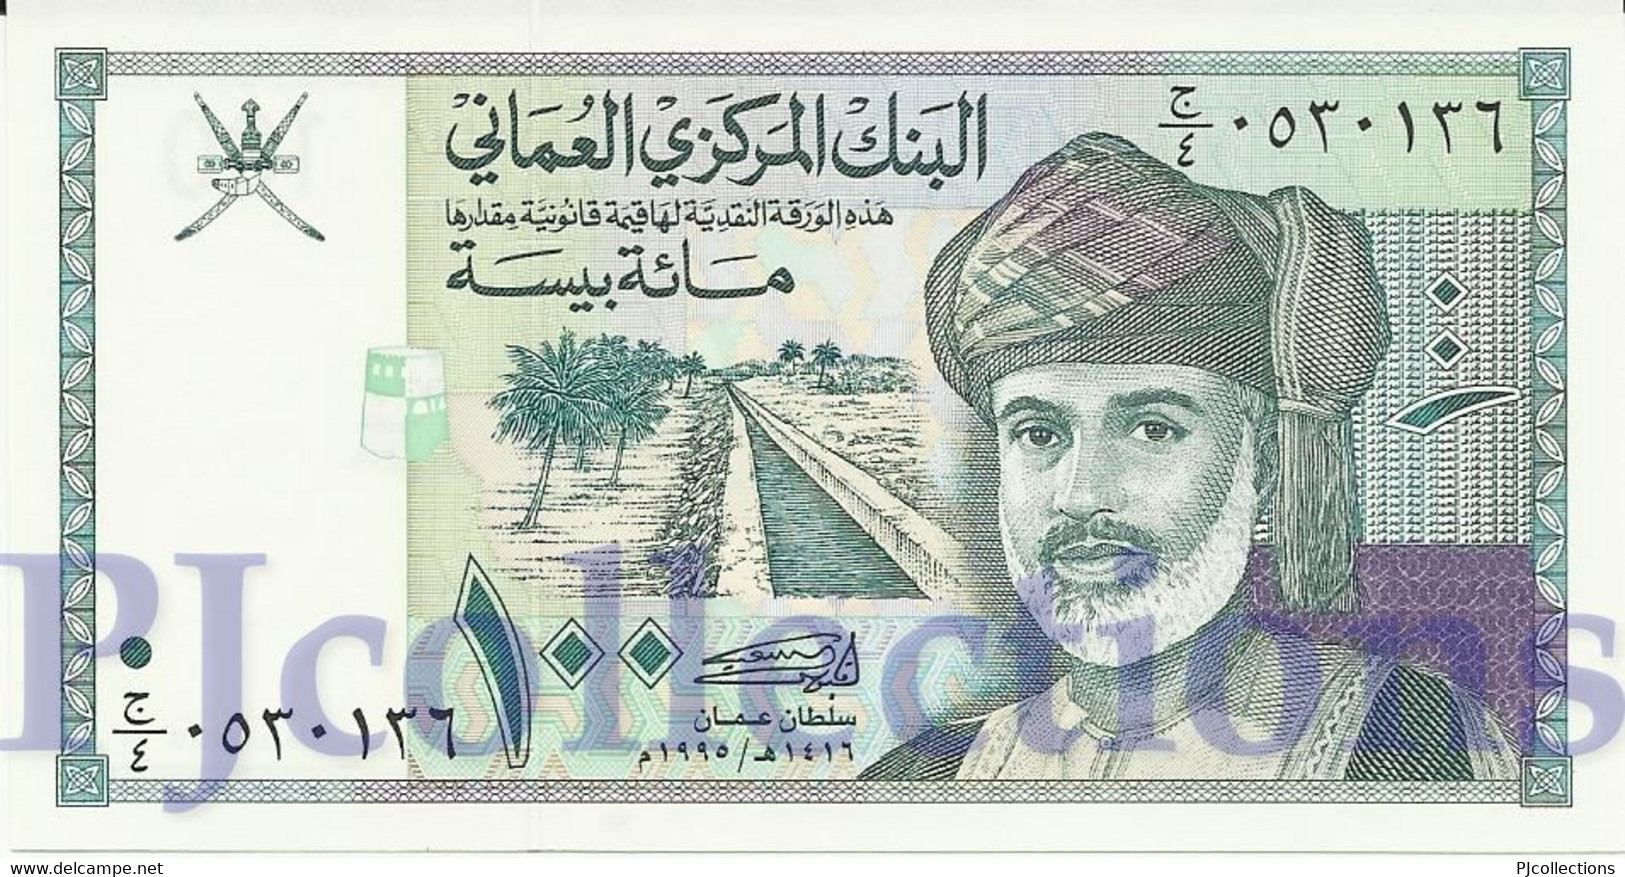 OMAN 100  BAISA 1995 PICK 31 UNC - Oman